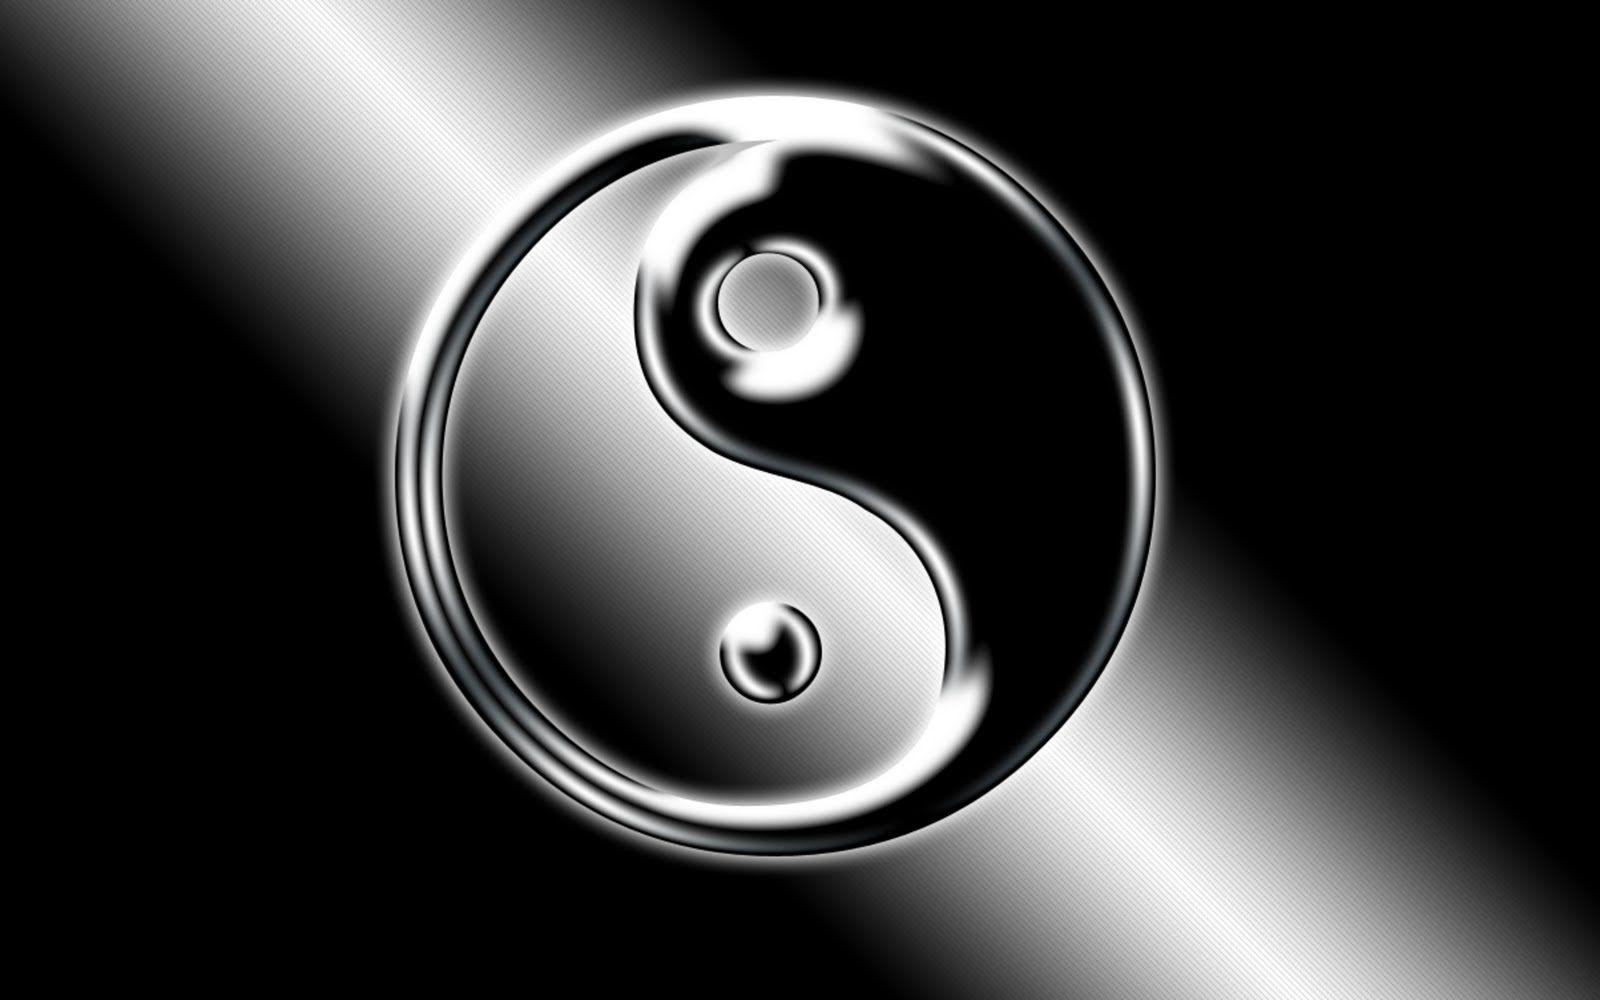 Ying Yang Logo Wallpaper Free Downloads Wallpaper